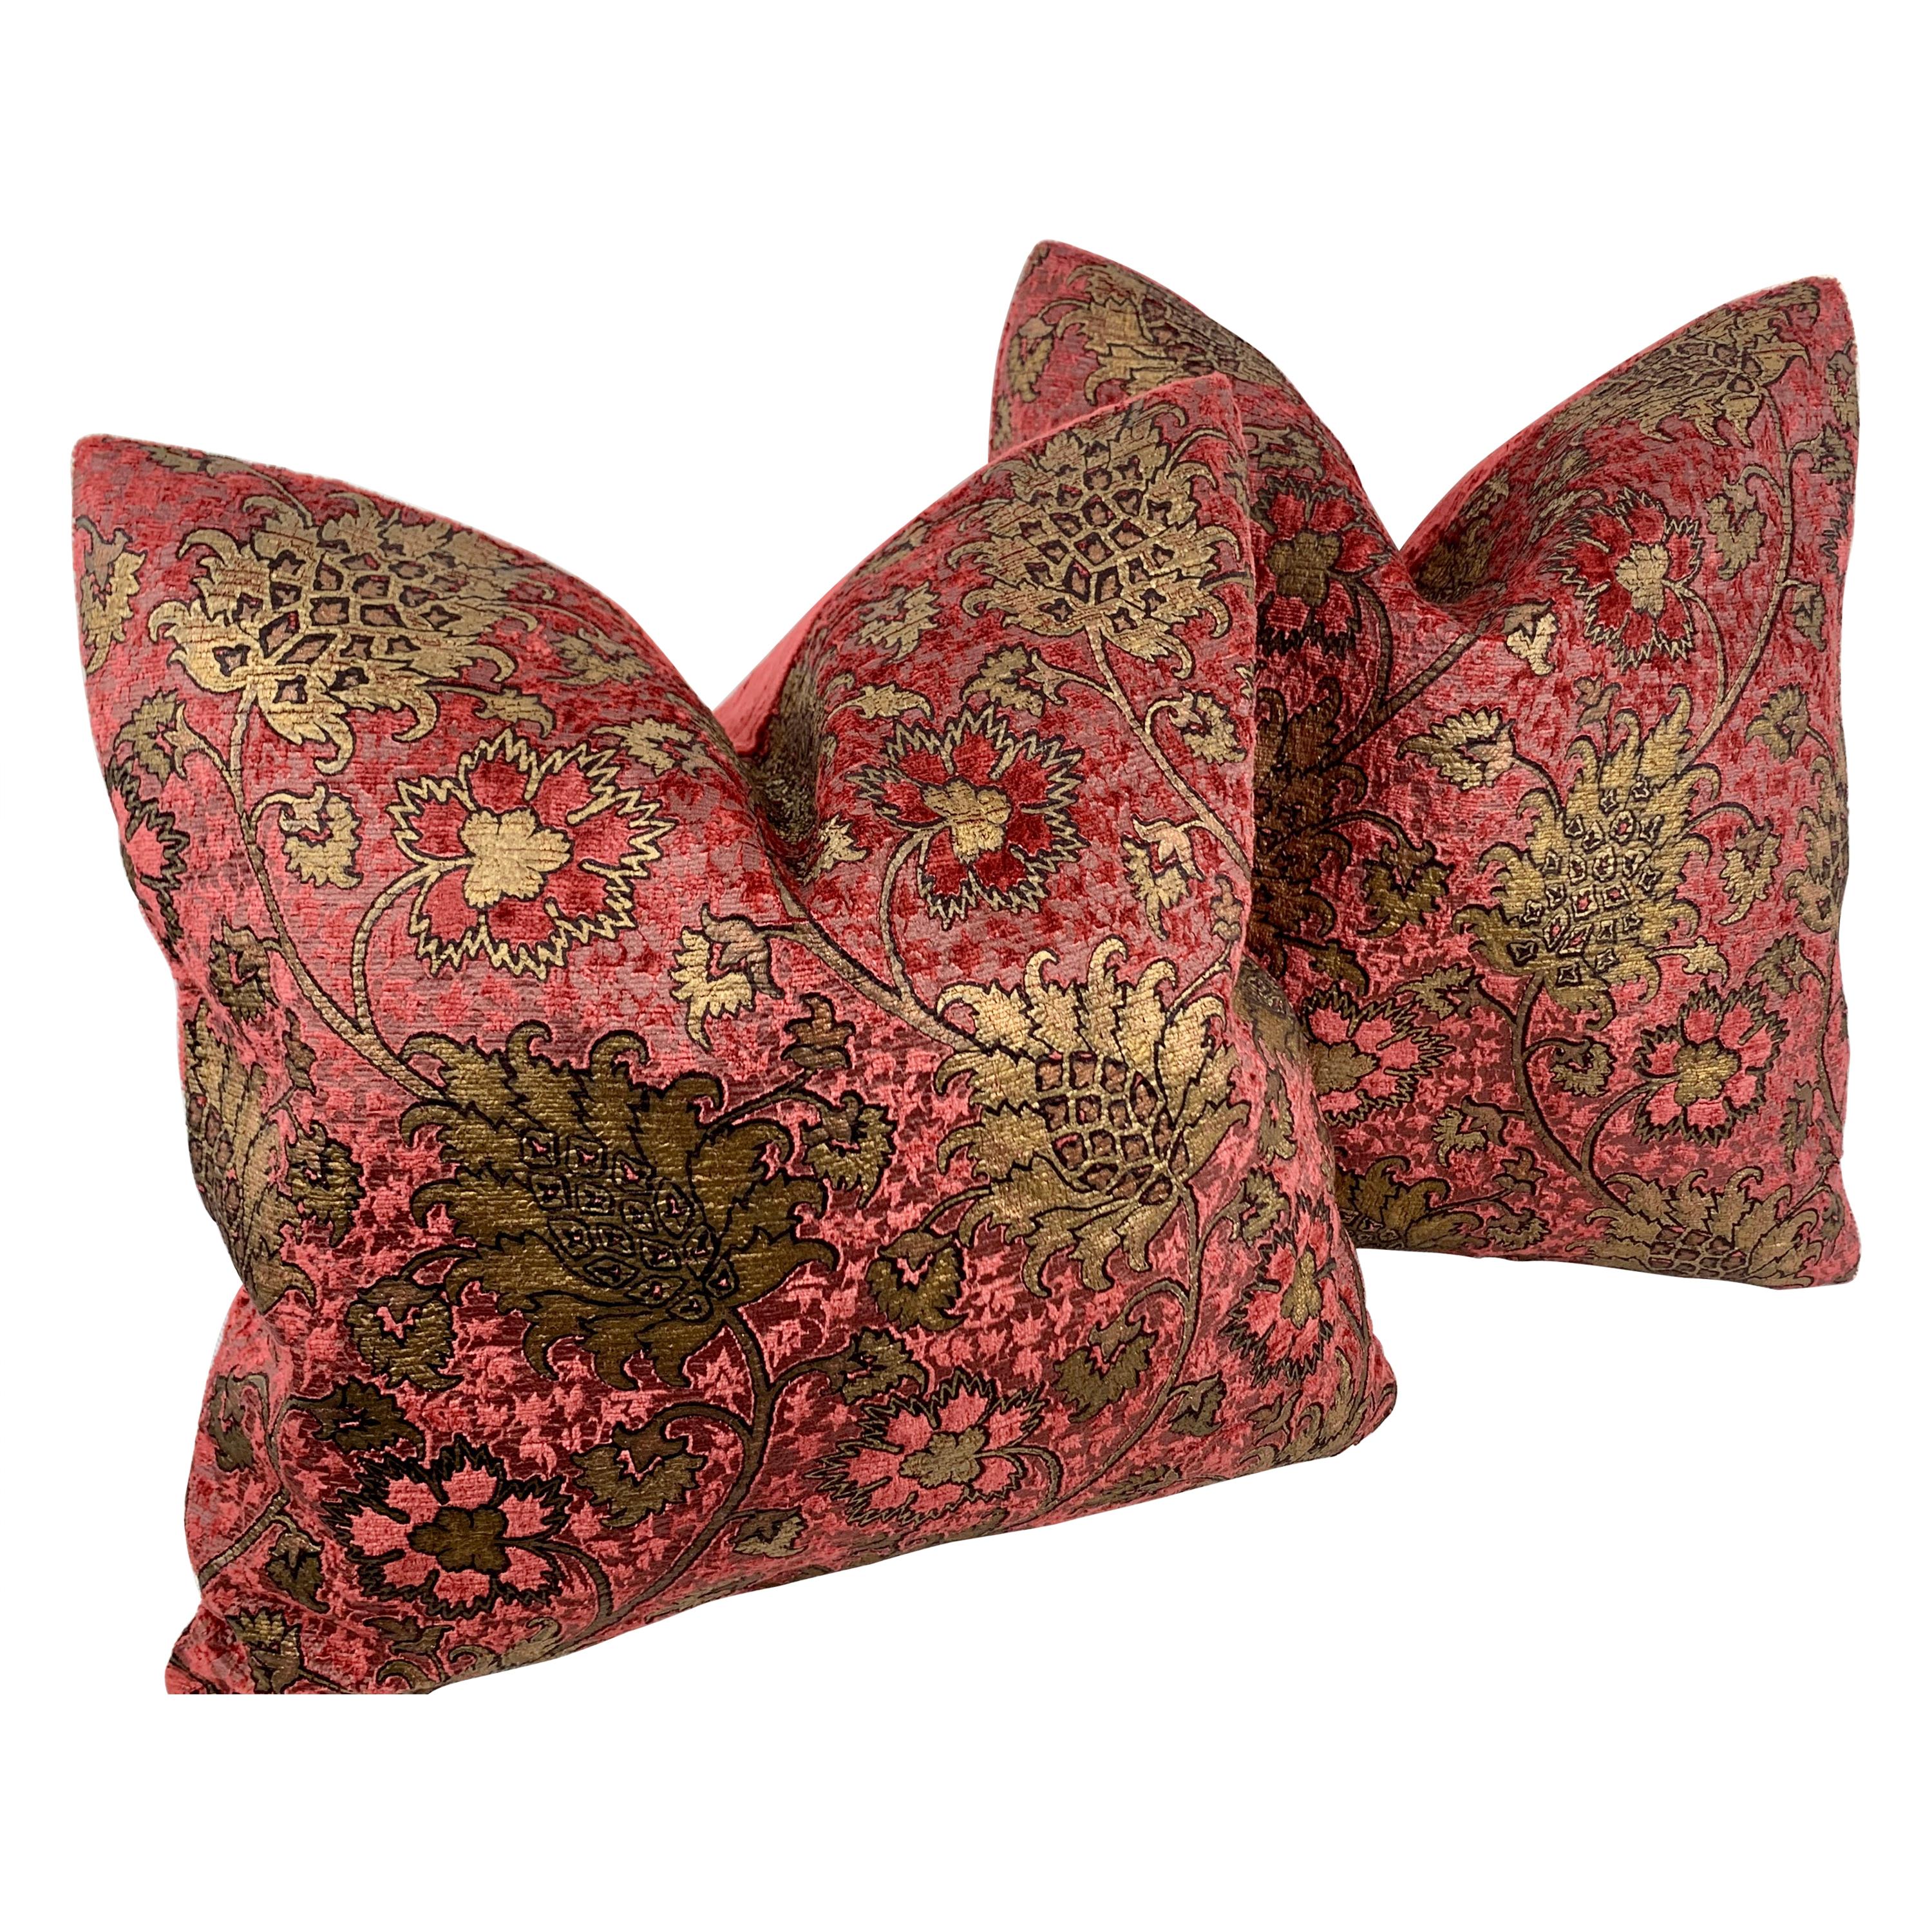 Fortuny/Venetia Studium Square Velvet Cushions. The Bizarre Pattern